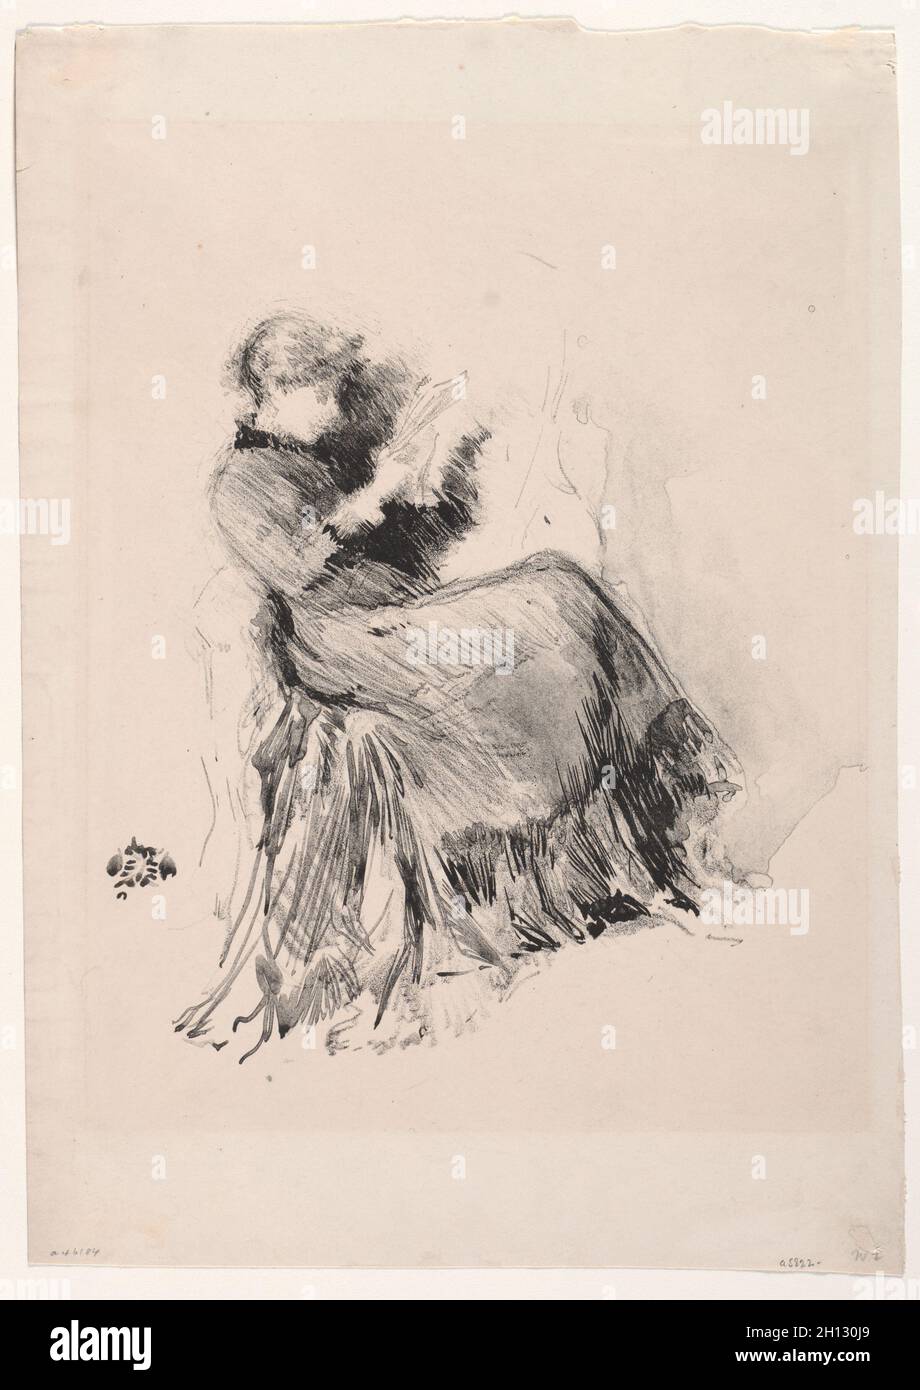 Studie, 1878. James McNeill Whistler (amerikanisch, 1834-1903). Lithographie; Stockfoto